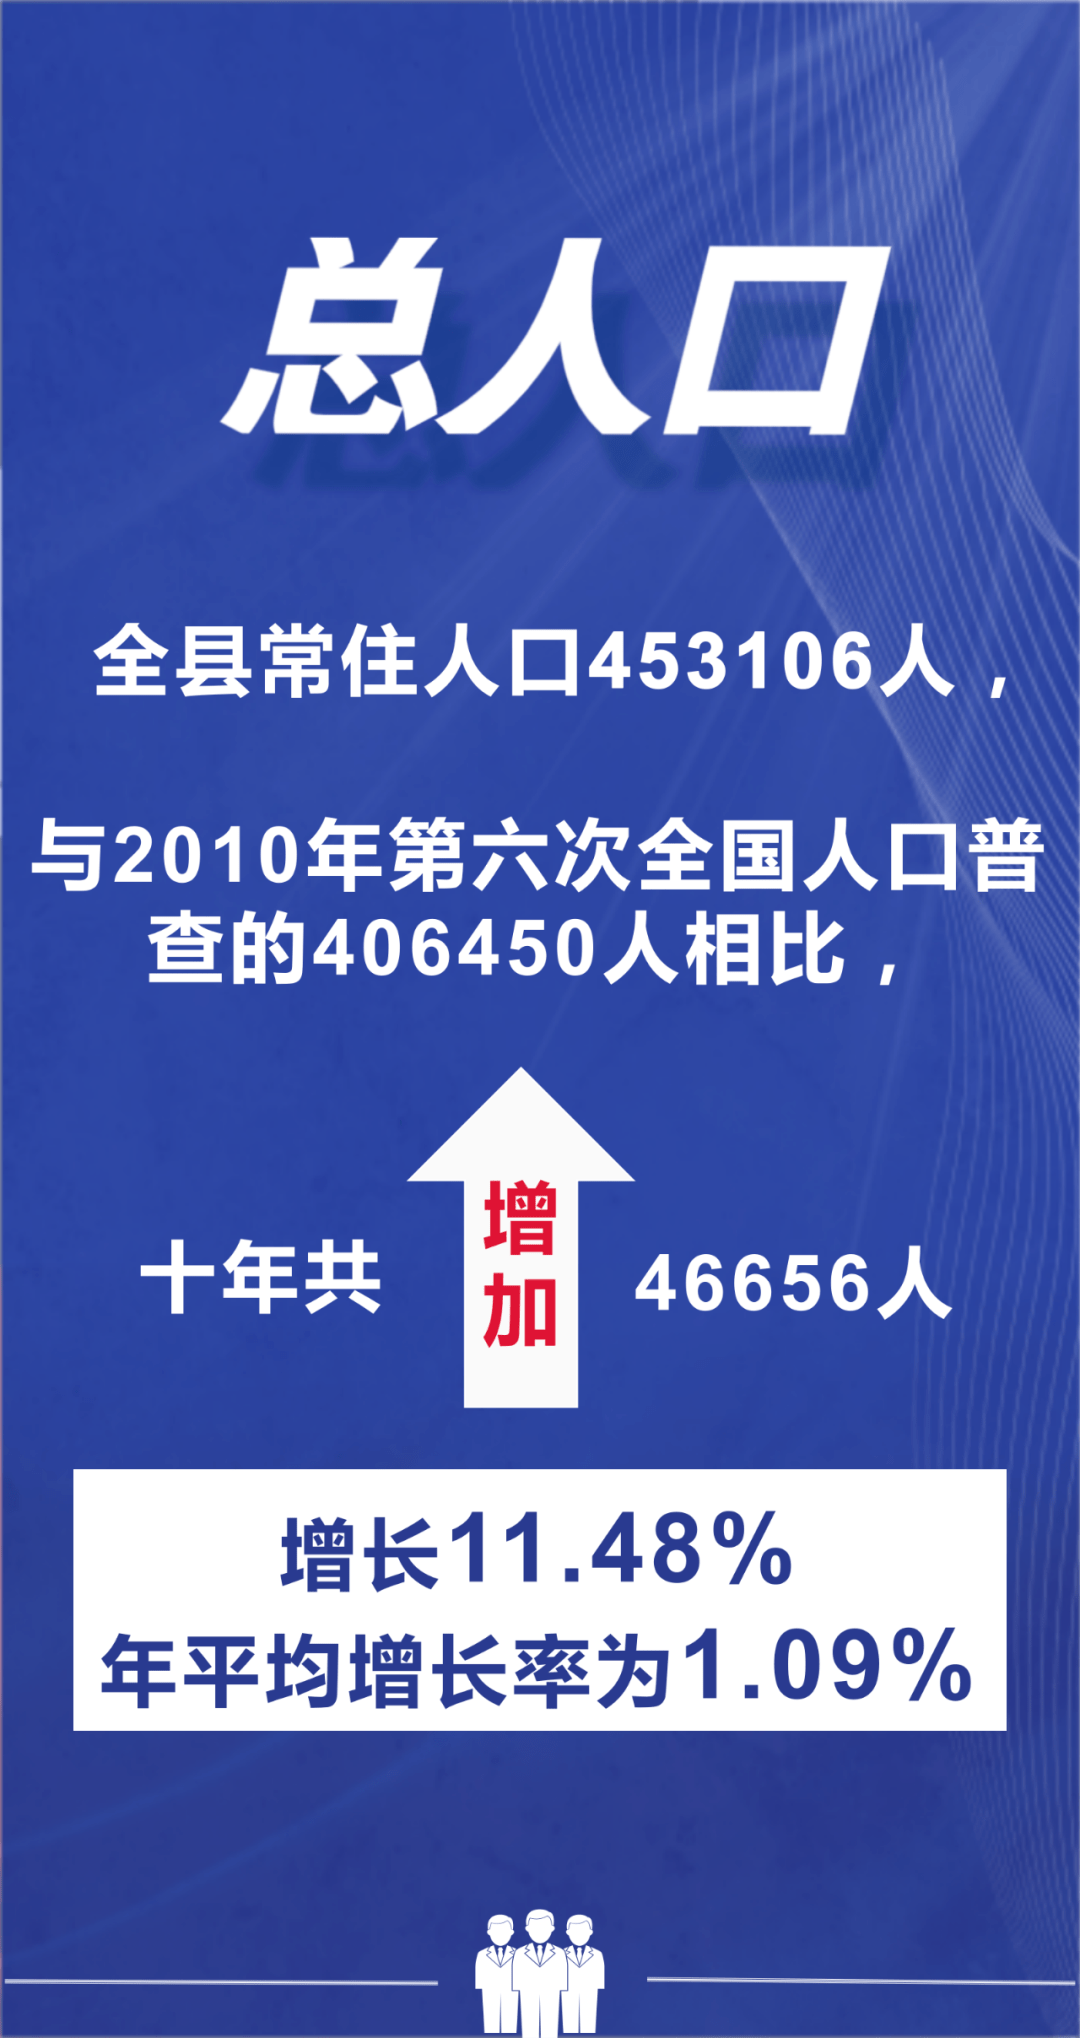 桐庐县第七次全国人口普查主要数据